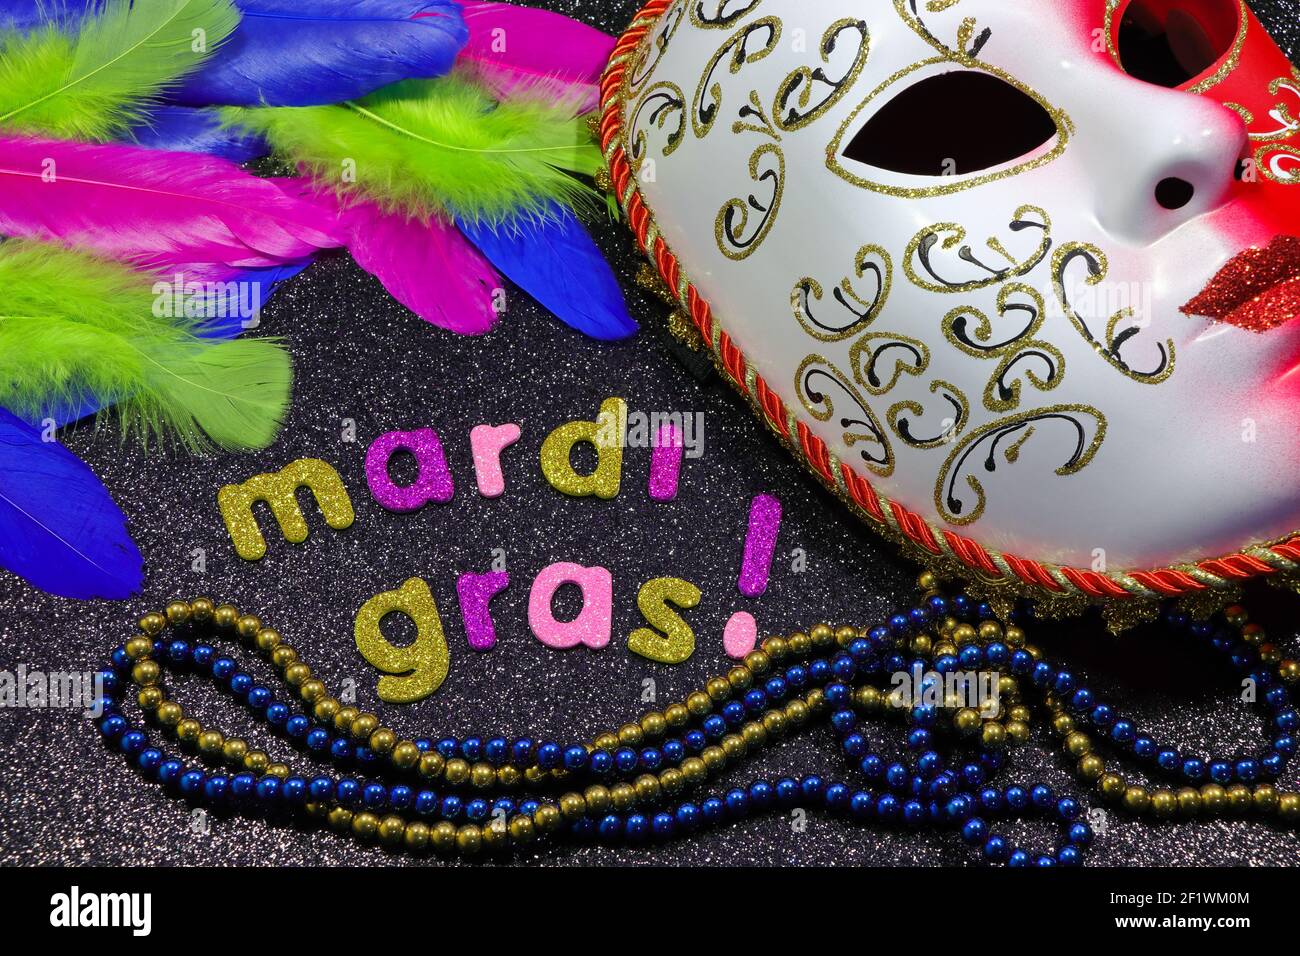 Mardi gras texte et perles avec masque et plumes Banque D'Images